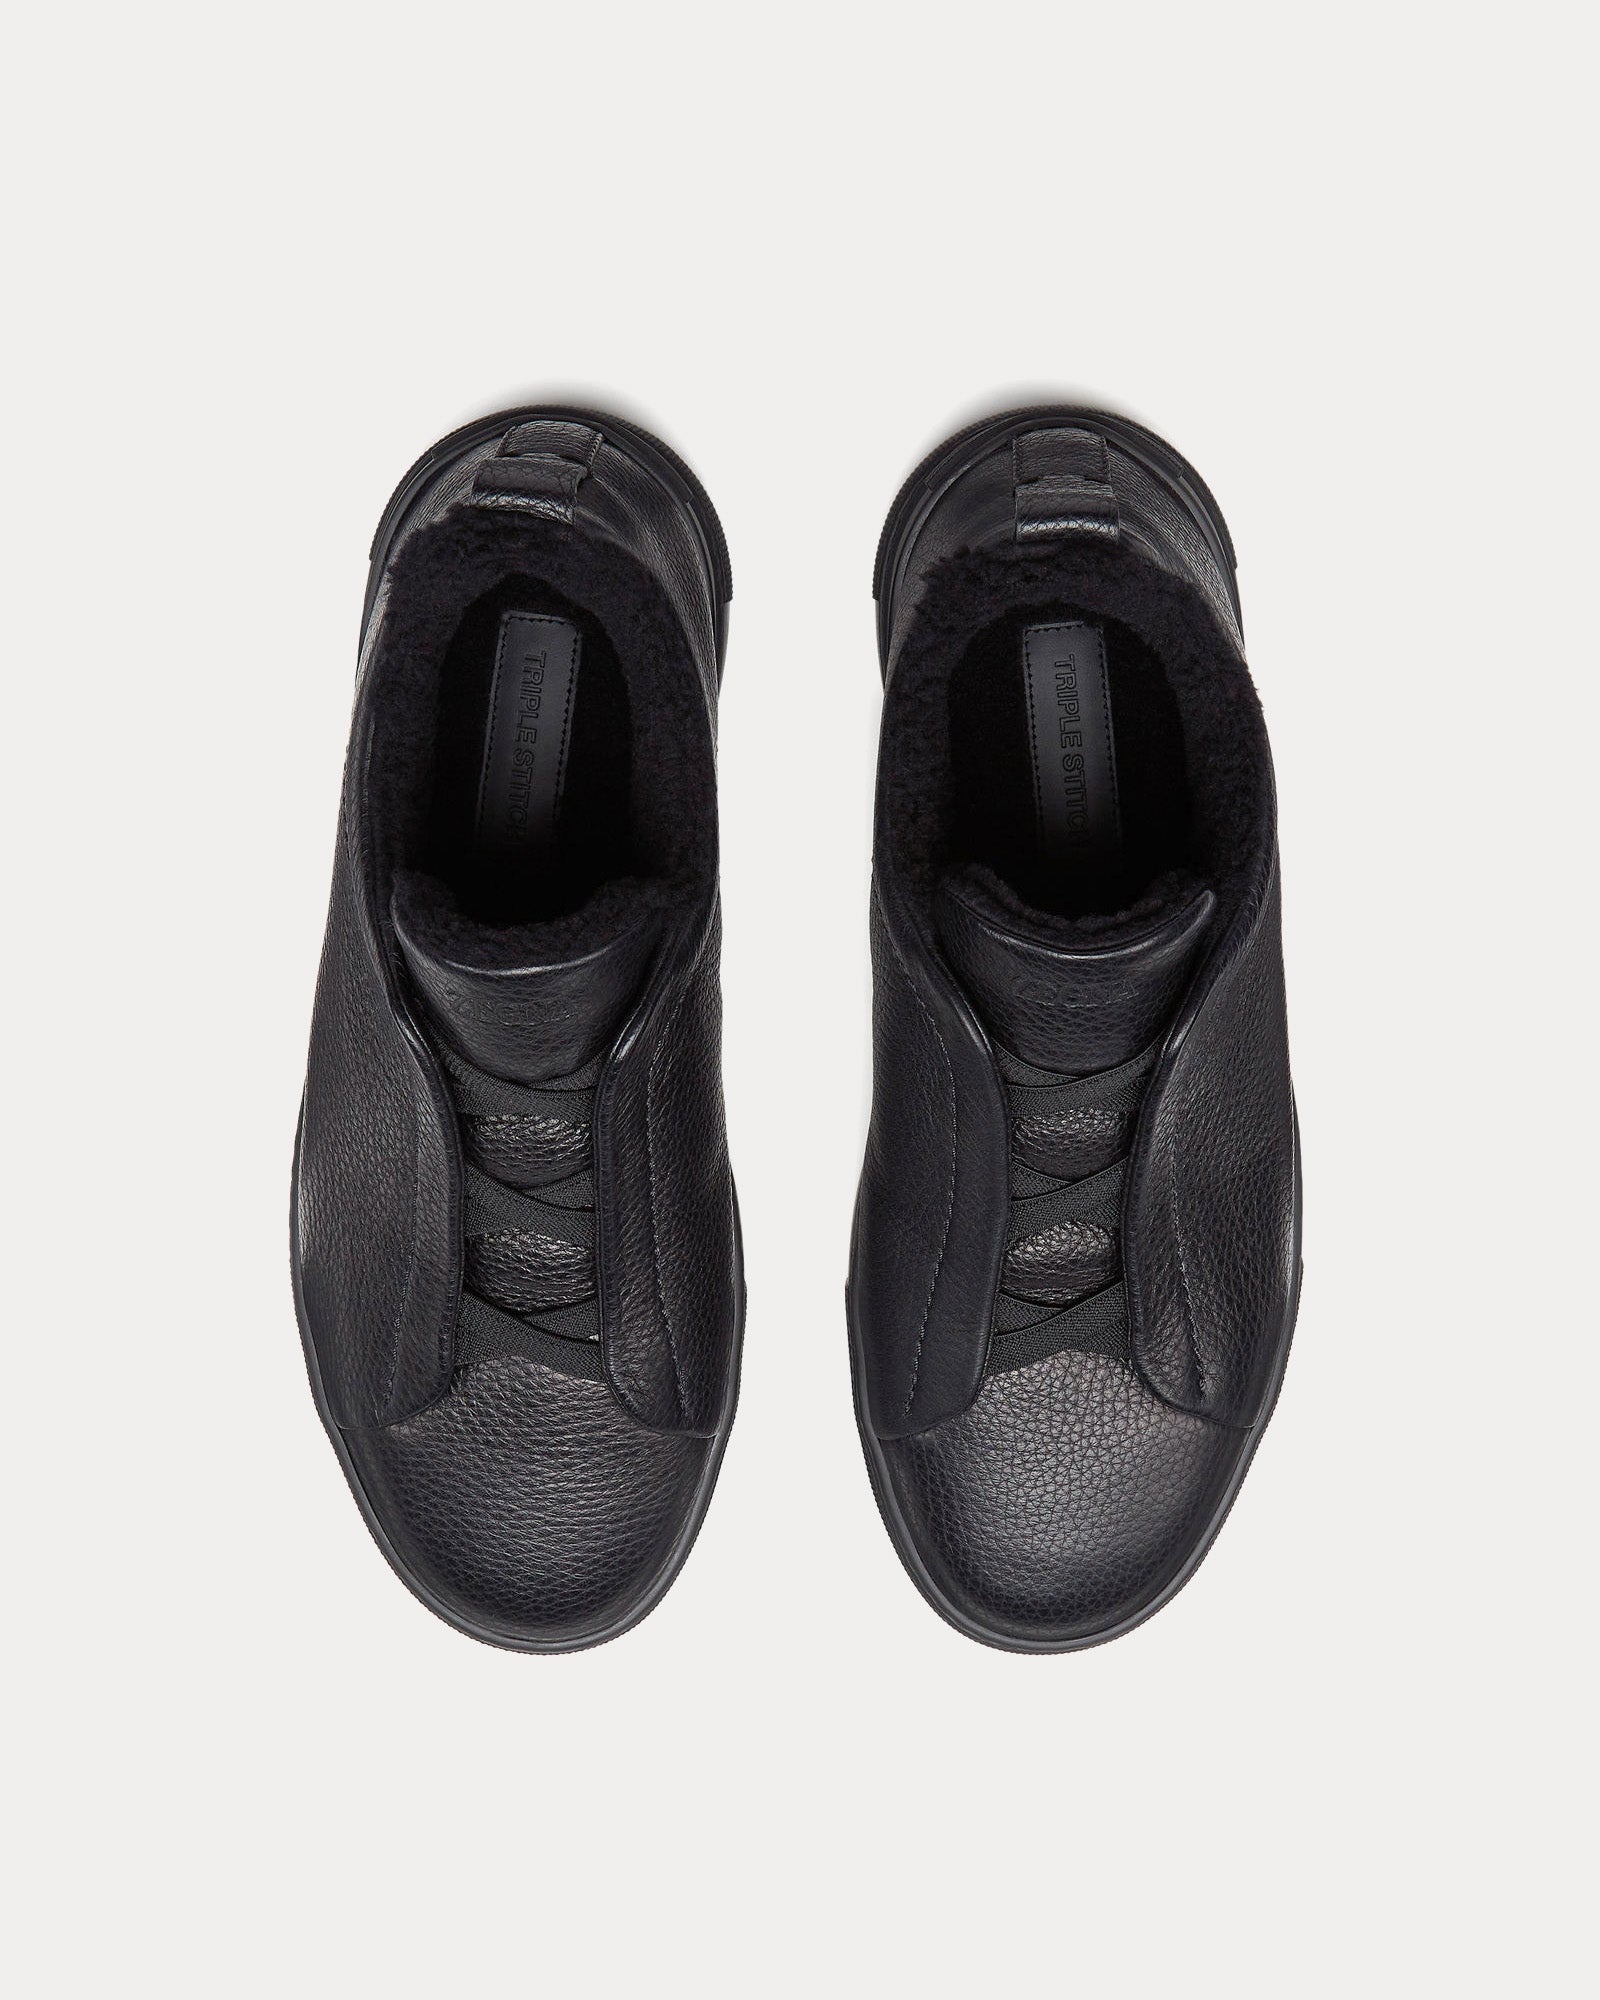 Zegna - Triple Stitch Deerskin & Shearling Black Slip On Sneakers